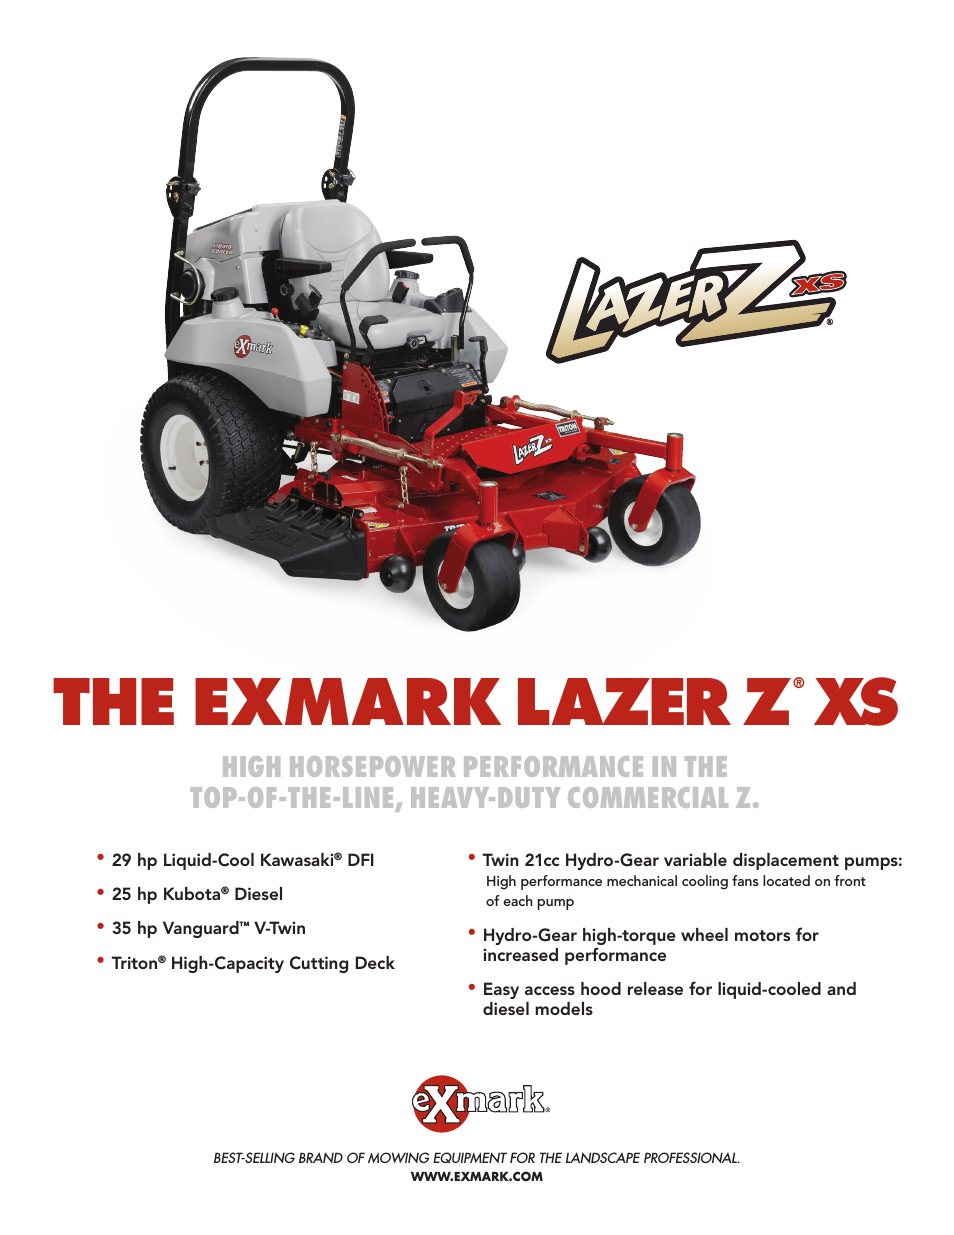 Lazer Z XS lXs35bv665